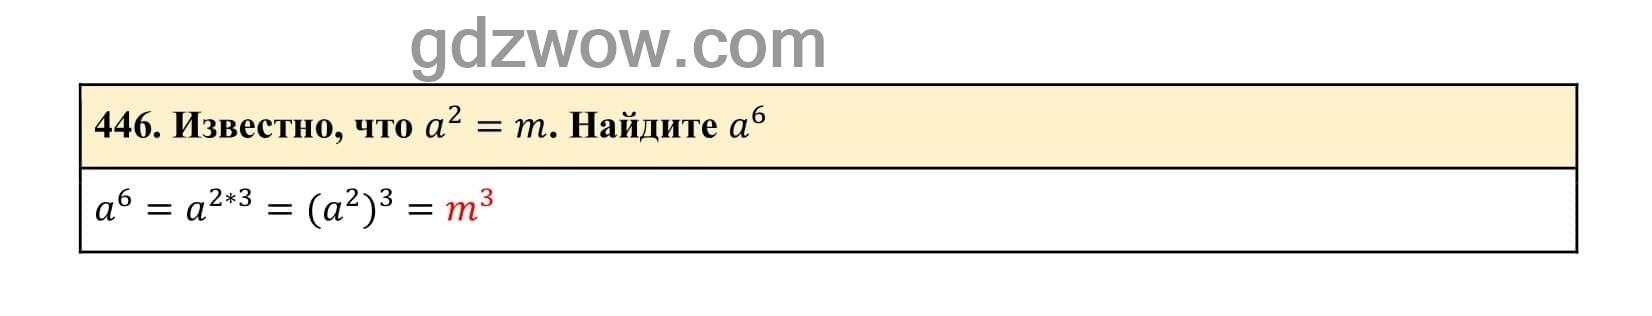 Упражнение 446 - ГДЗ по Алгебре 7 класс Учебник Макарычев (решебник) - GDZwow